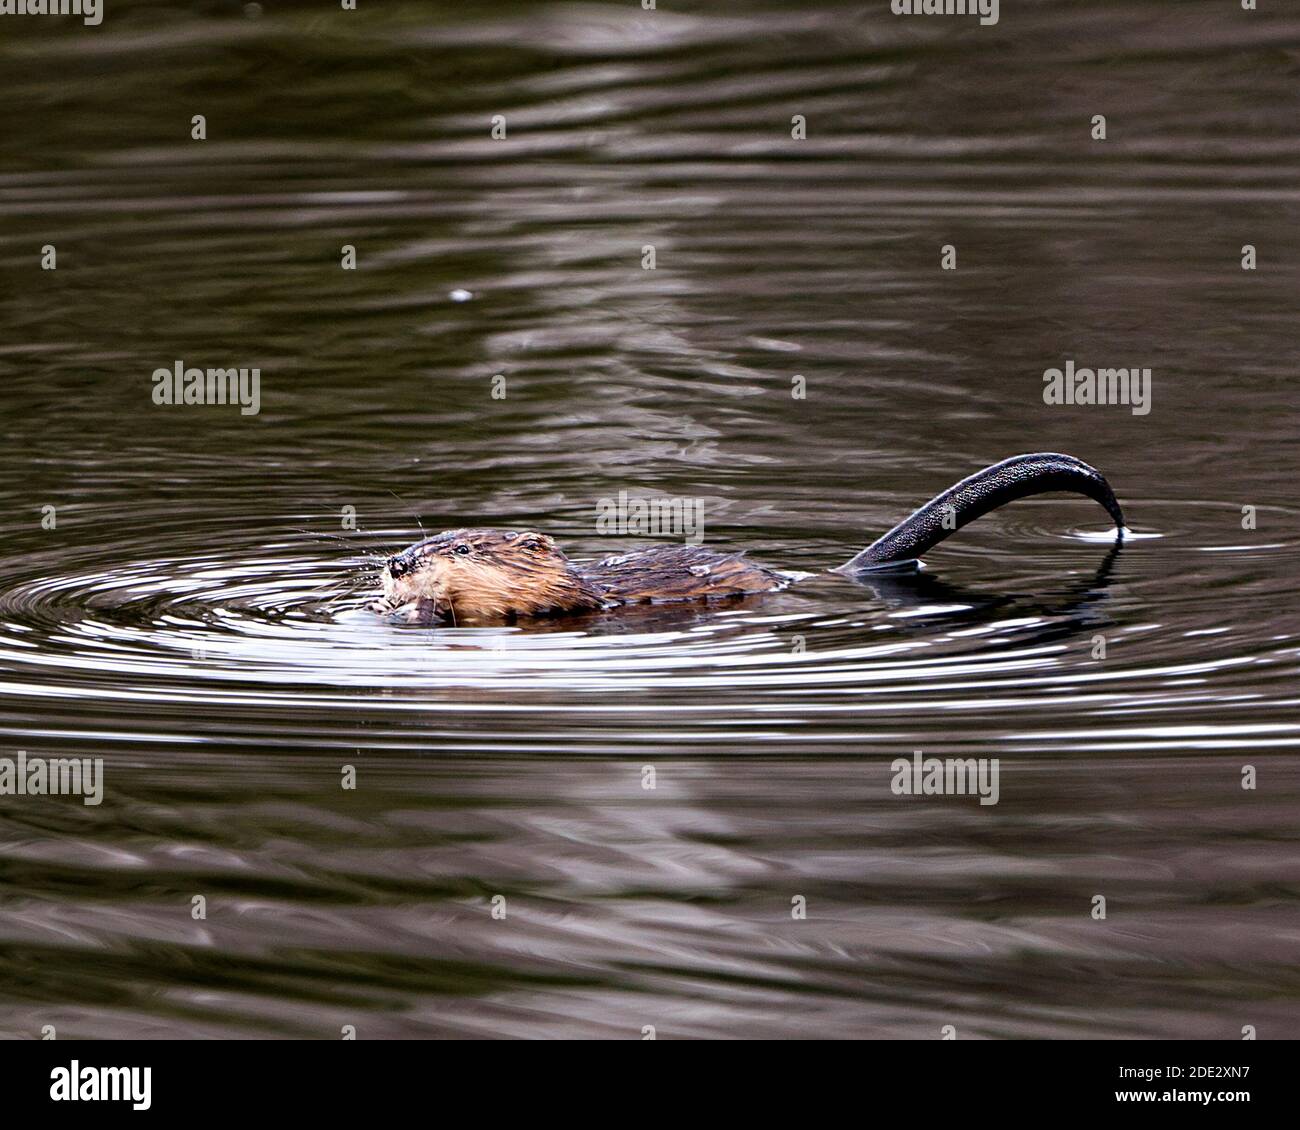 Muskrat in acqua che mostra la sua pelliccia marrone e la coda nel suo ambiente e habitat. Immagine. Immagine. Verticale. Foto Stock